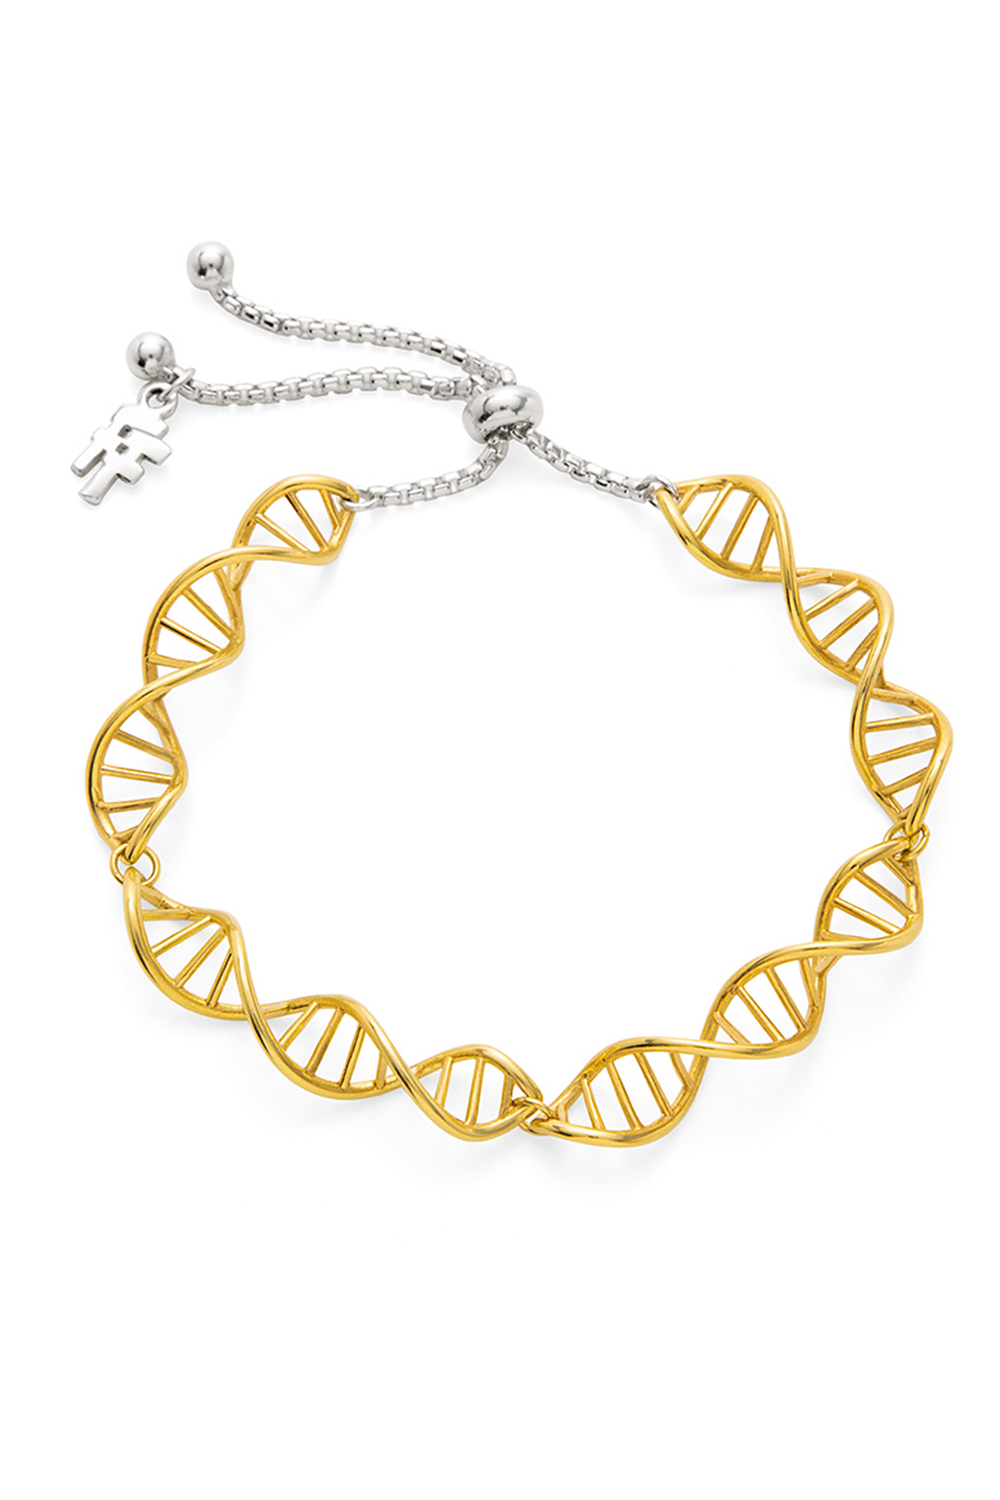 Γυναικεία/Αξεσουάρ/Κοσμήματα/Βραχιόλια FOLLI FOLLIE - Γυναικείο ασημένιο βραχιόλι FOLLI FOLLIE STYLE DNA χρυσό